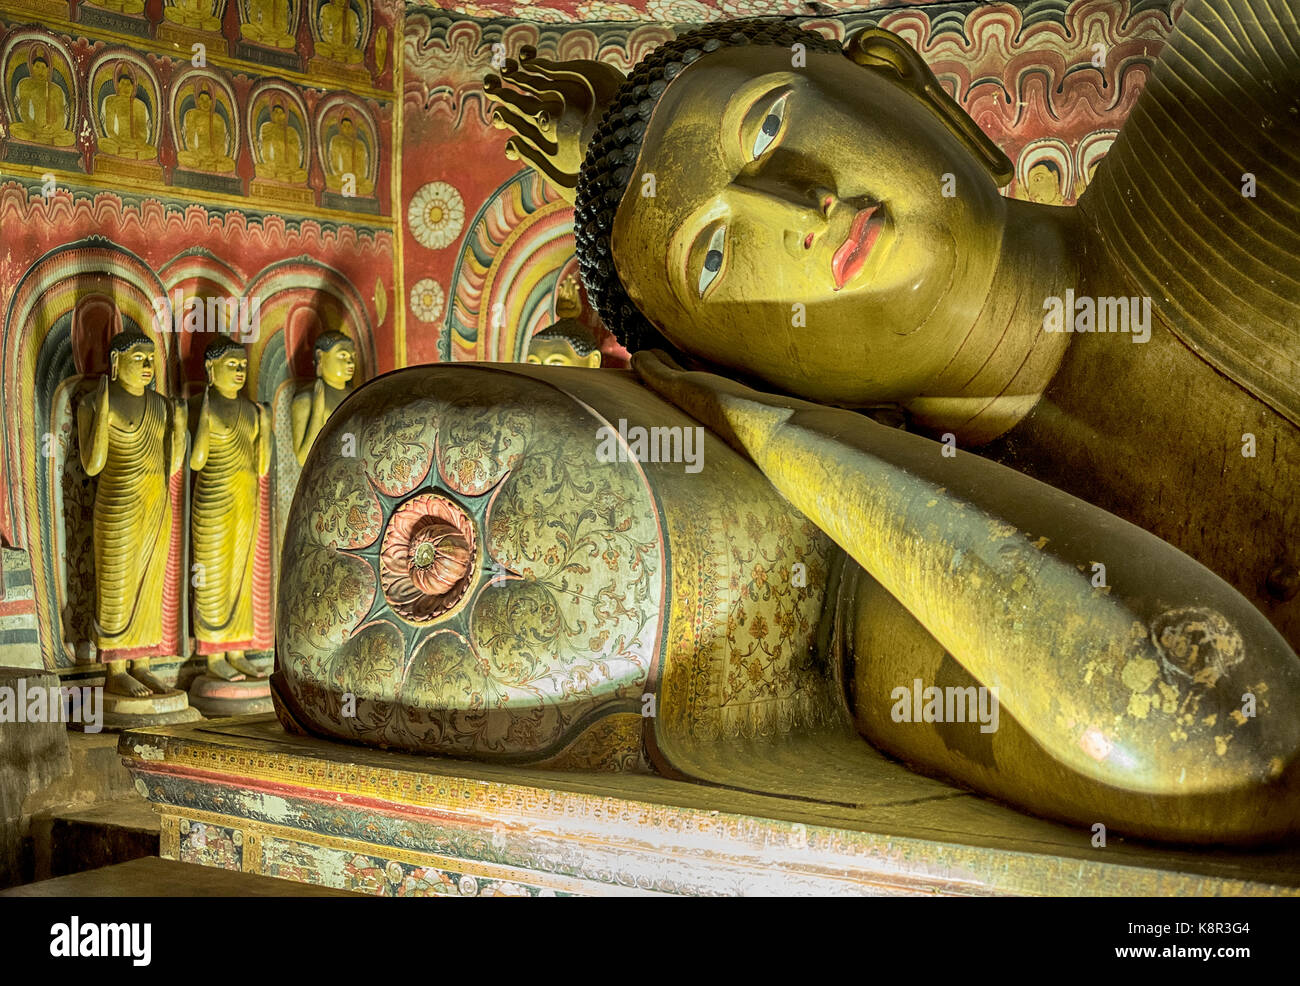 Bouddha repose sa tête sur un oreiller dans l'ombre de la grotte au temple dambulla près de kandalarma au srii lanka. Banque D'Images